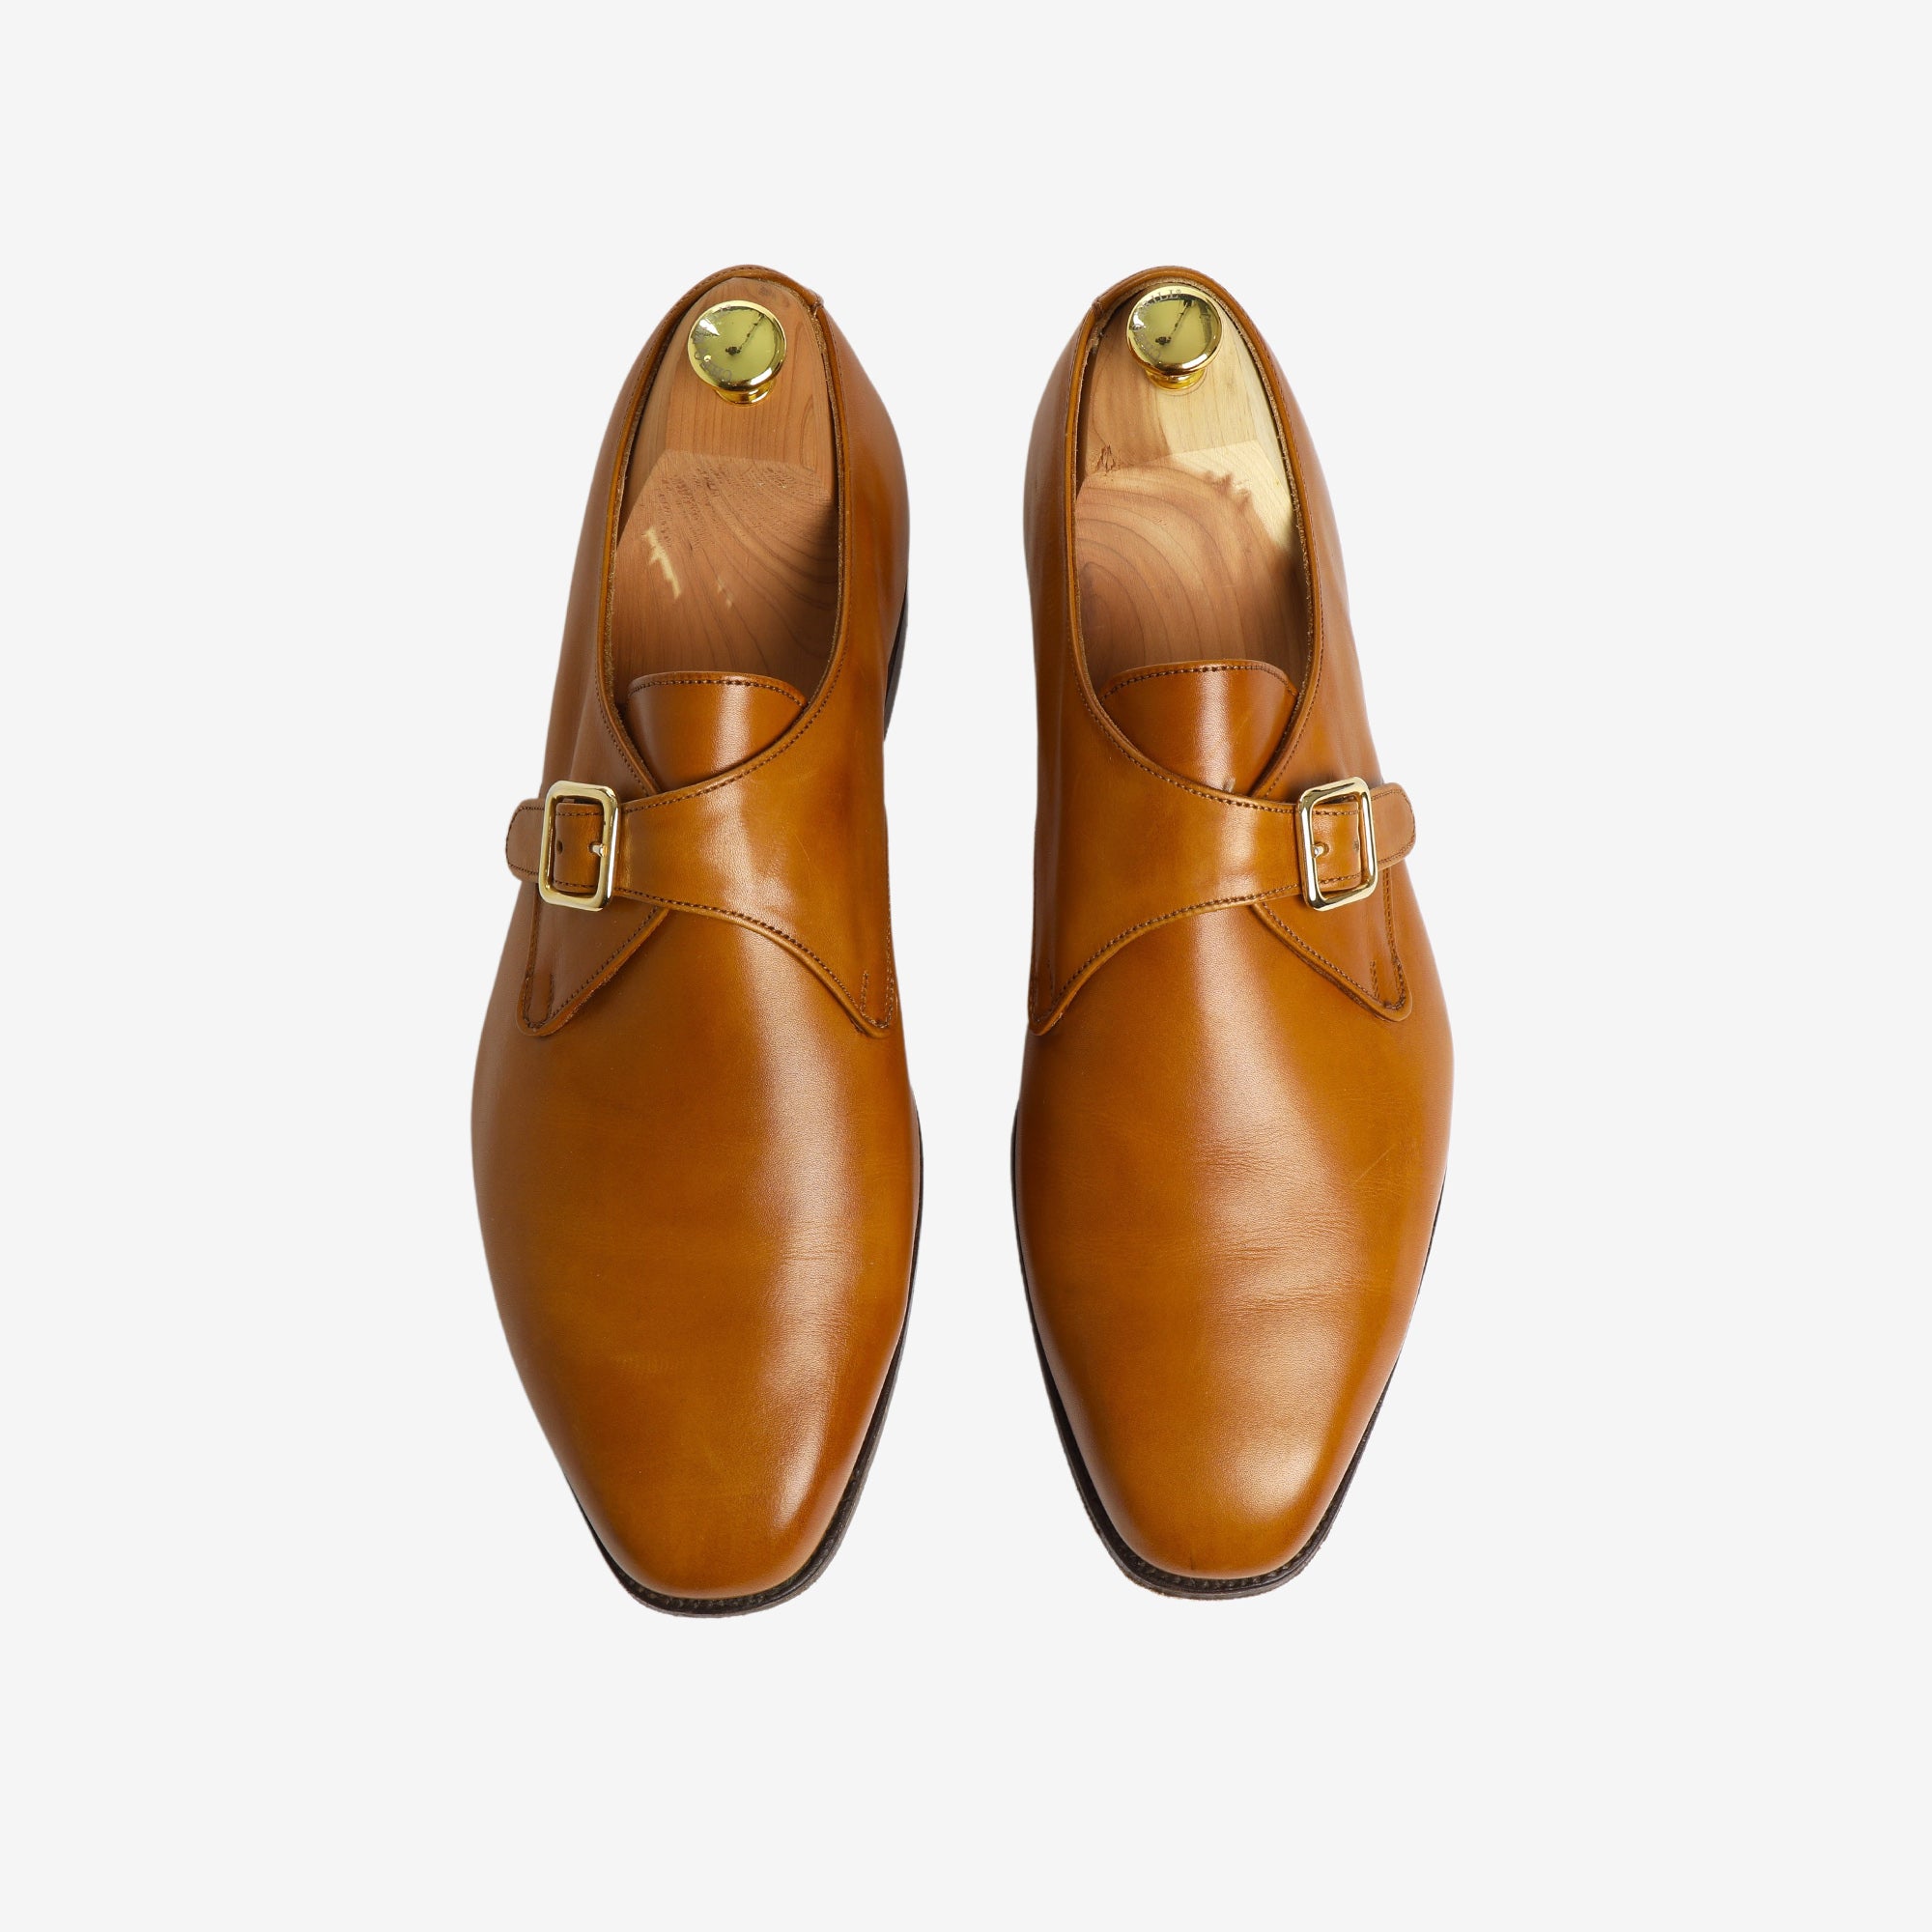 Mayfair Single Buckle Monk Shoe